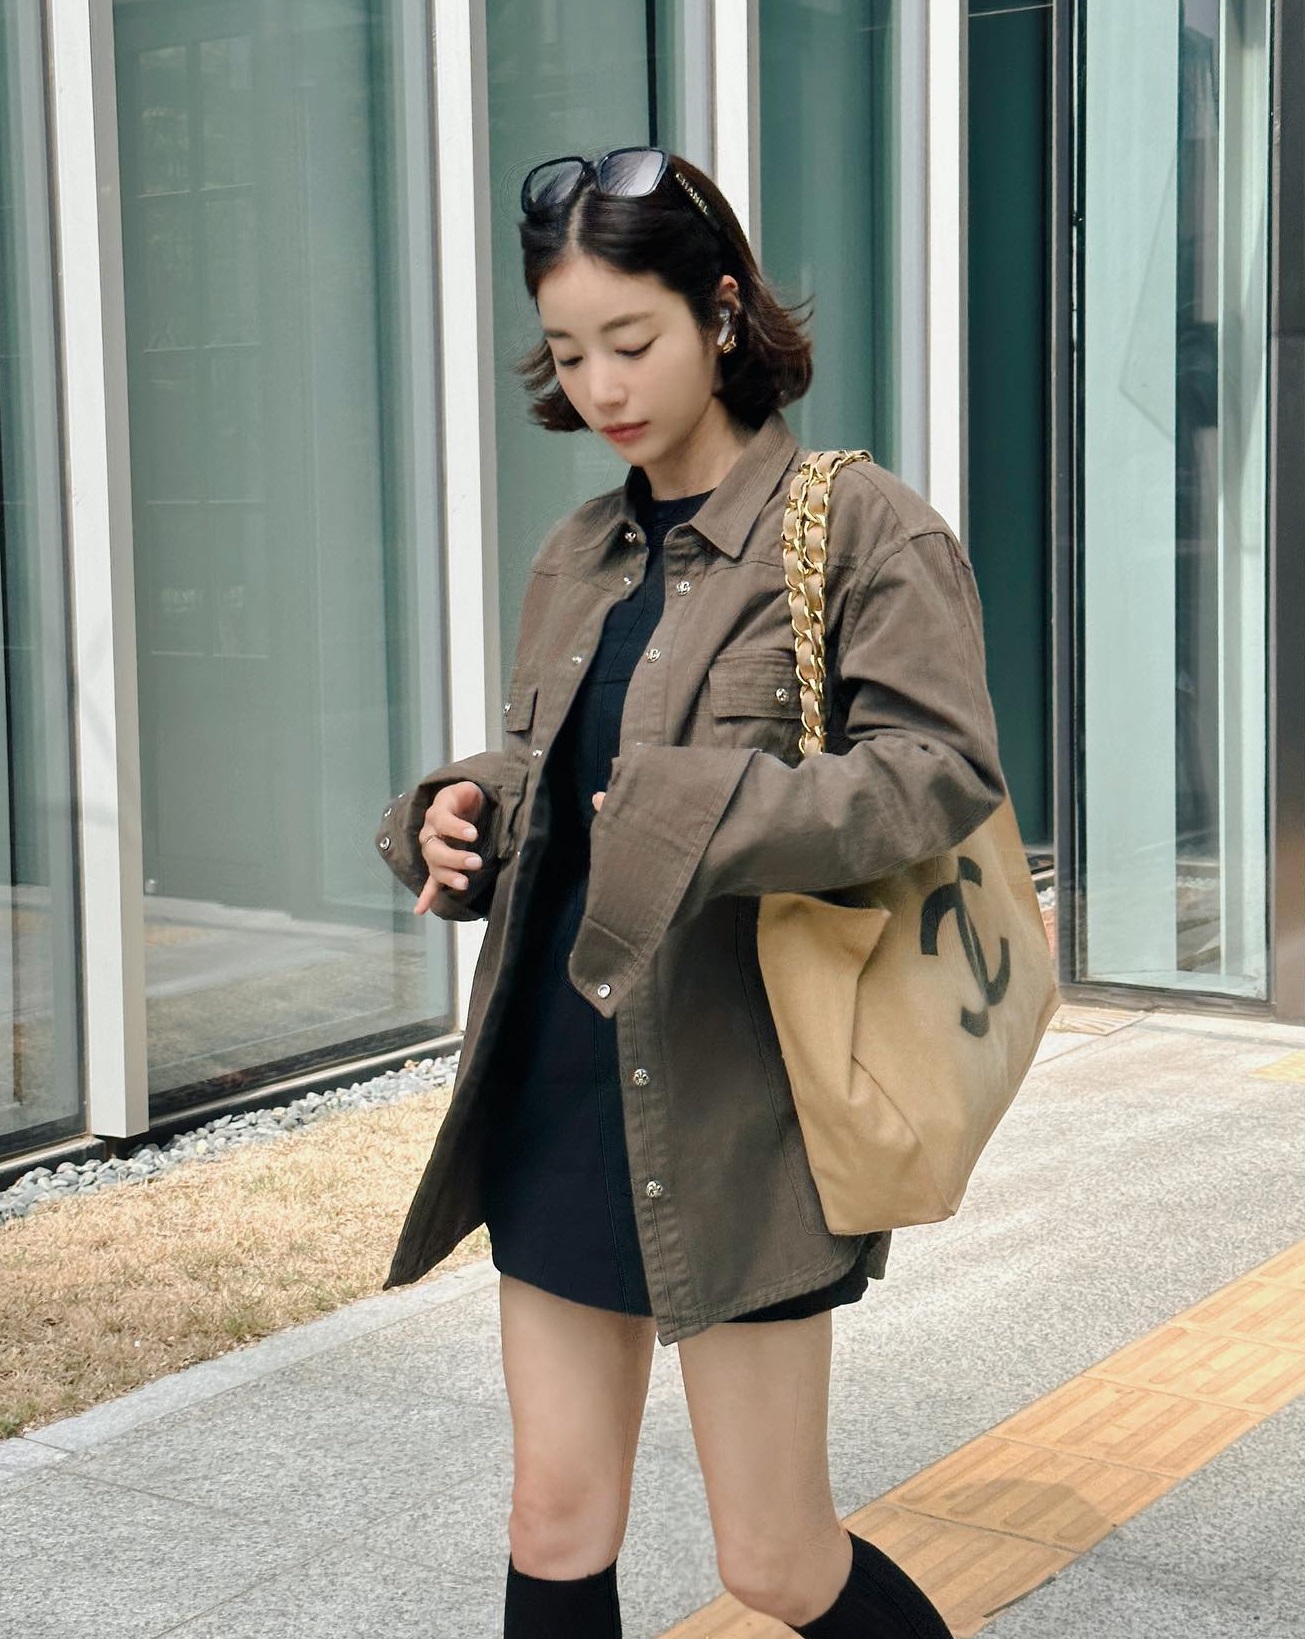 Fashionista Hàn Quốc có phong cách siêu trẻ trung ở tuổi 40, ngắm là muốn học theo - Ảnh 8.